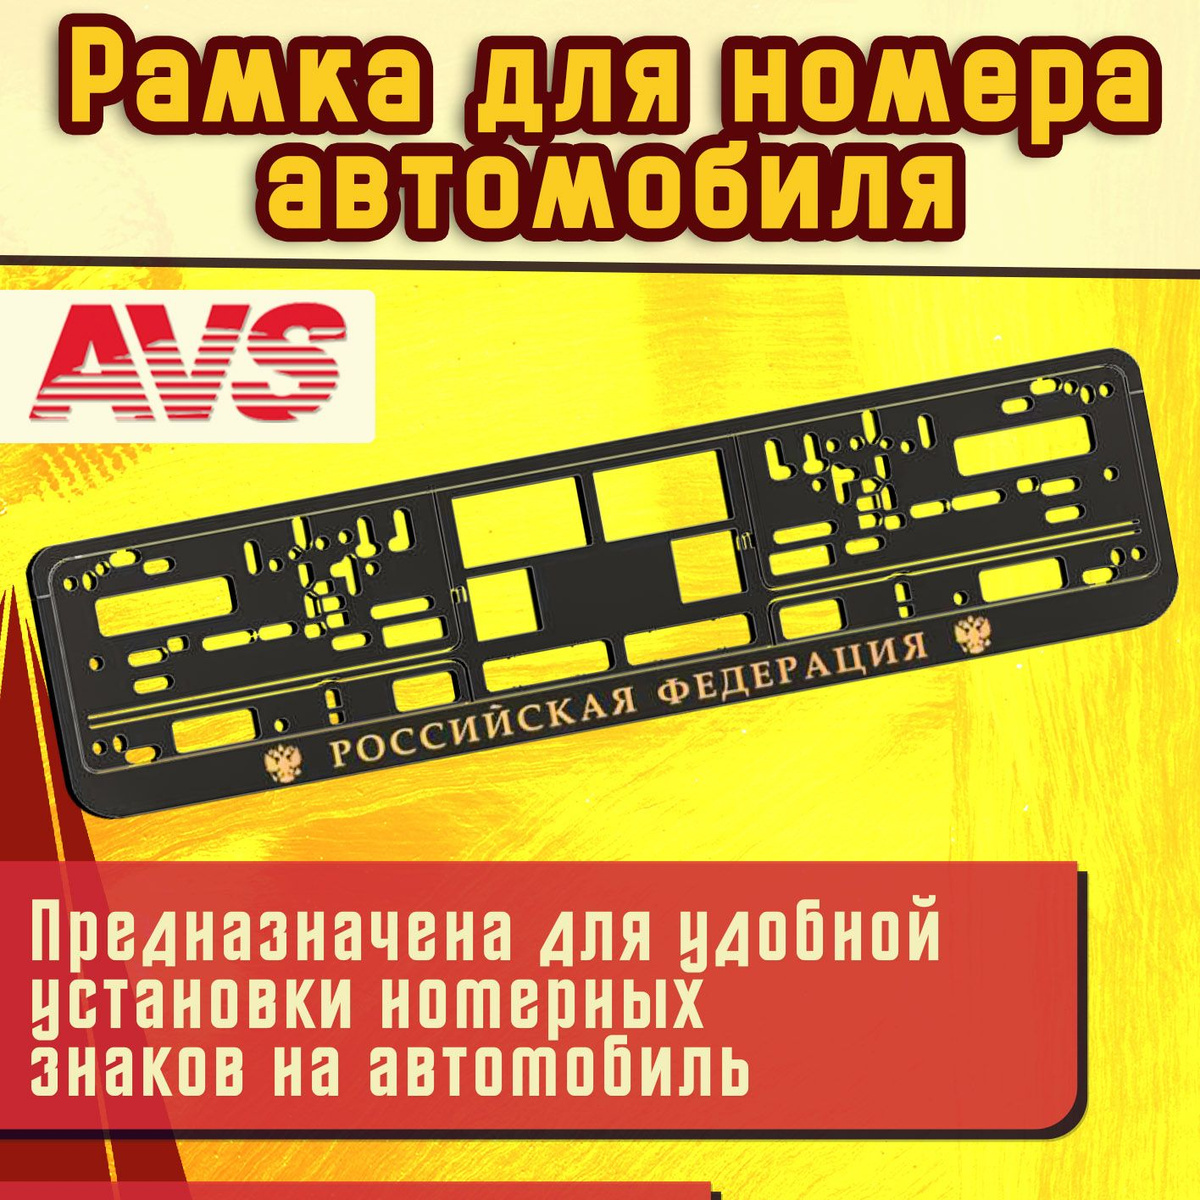 Регистрационный номер - важный атрибут любого автомобиля. Поэтому к его креплению необходимо отнестись ответственно. Прекрасным выбором станет рамка номерного знака AVS.  Рамка для номера AVS RN-10 изготовлена из высококачественного силикона промышленного класса, с пластиковой вставкой и повторяет изгиб бампера Вашего автомобиля. На корпусе рамки нет рекламы и лишних изображений. Рамка предназначена для удобной установки номерных знаков на автомобиль. Конструкция открытия рамки – "нижняя защелка". Данная конструкция обладает надежным креплением номерного знака. Тонкая и стильная рамка, аккуратность форм и стильный дизайн идеально впишется в экстерьер вашего автомобиля.  Рамка госномера AVS имеет стильный дизайн, она точно не останется незамеченной.  Преимущества:   ⚡ Не выцветает;  ⚡ Надежная конструкция;  ⚡ Надпись "Российская Федерация";  ⚡ Не царапает автомобиль;  ⚡ Не ржавеет, не дребезжит;  ⚡ Удобный способ крепления номеров. 